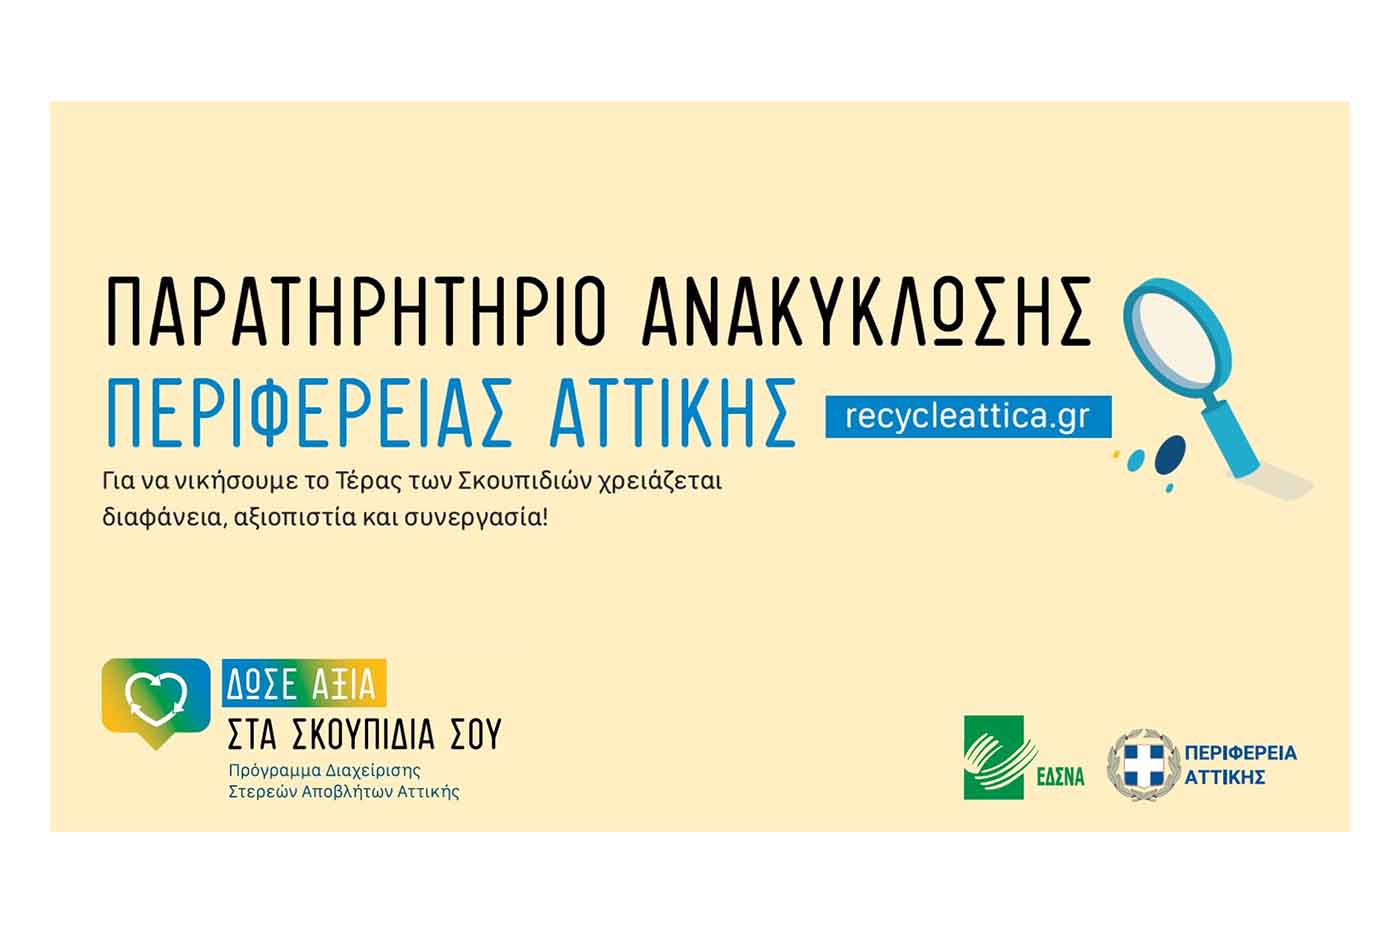 Παρουσίαση της ηλεκτρονικής πλατφόρμας recycle attica.gr – Οι Δήμοι που ανακηρύχτηκαν «πρωταθλητές» στην ανακύκλωση